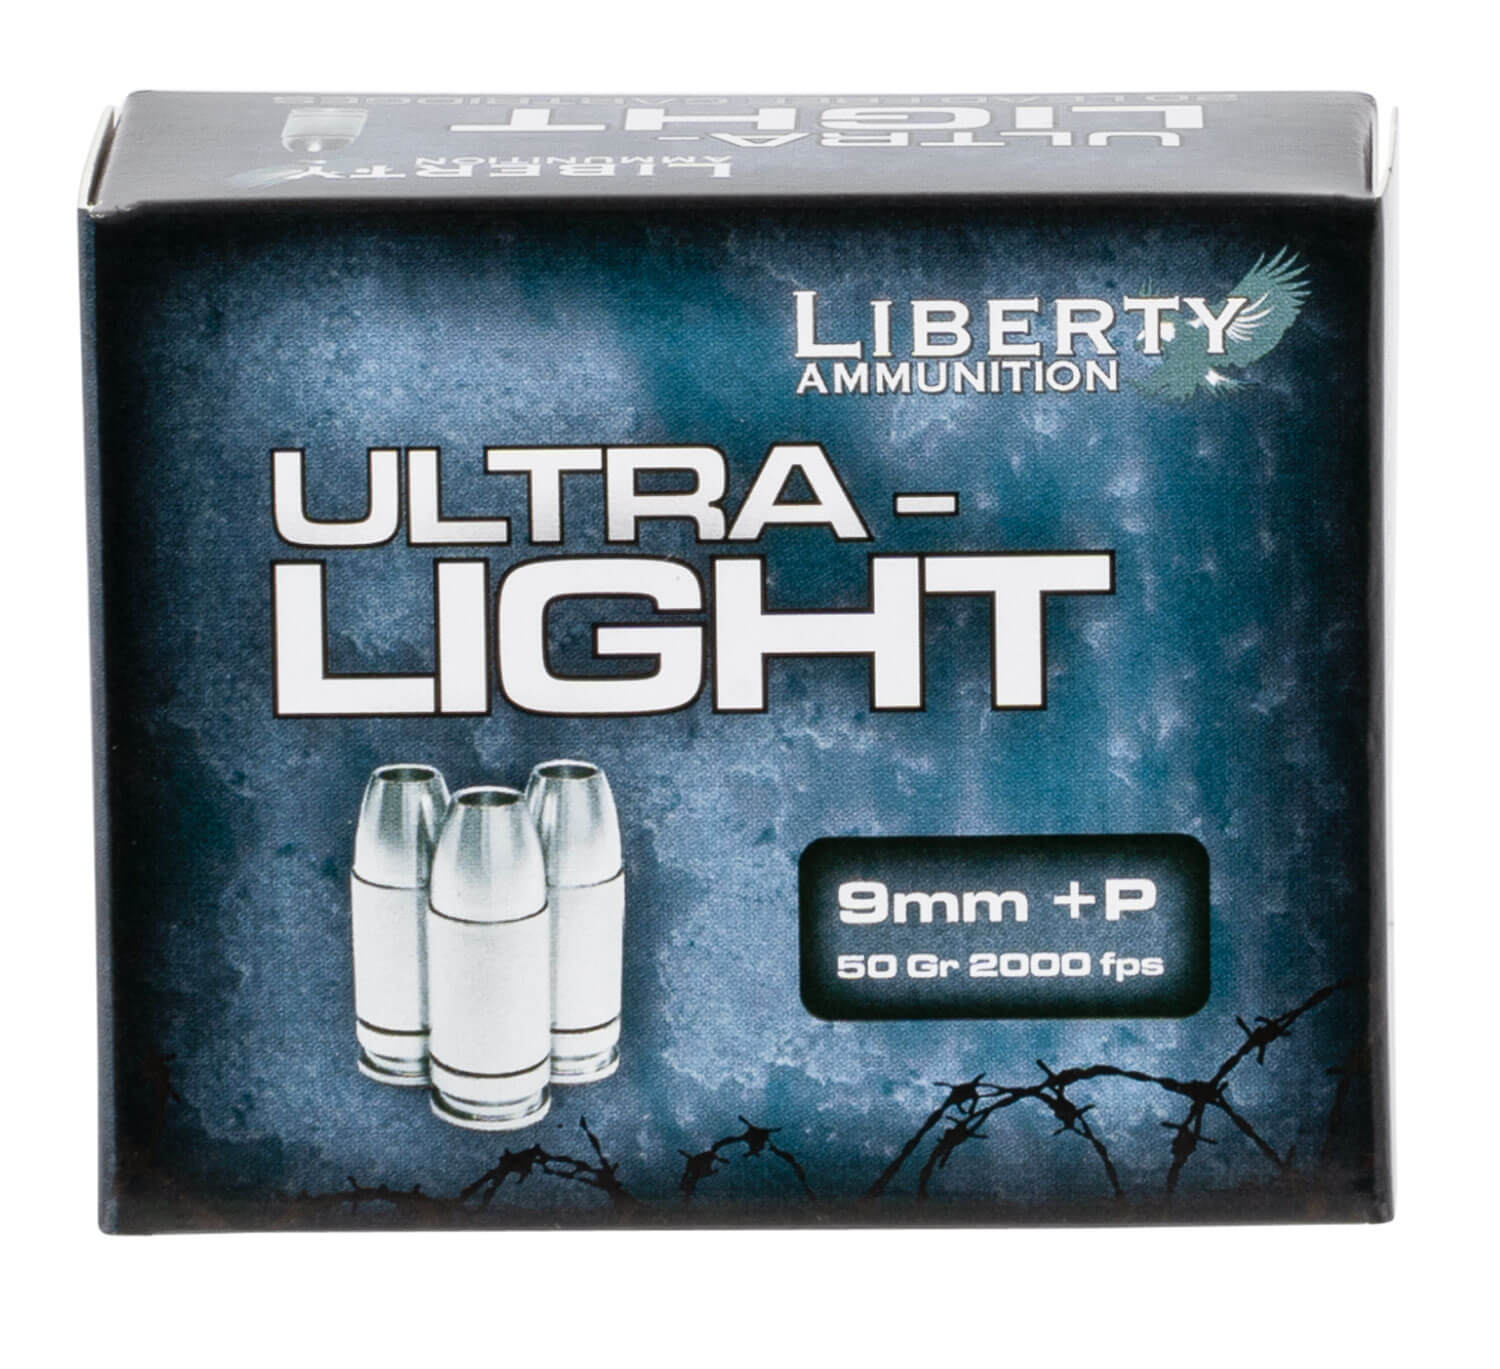 Liberty_Ammunition_9mm_+P-50_Grain-HP-Ultra_Light-20_Rounds